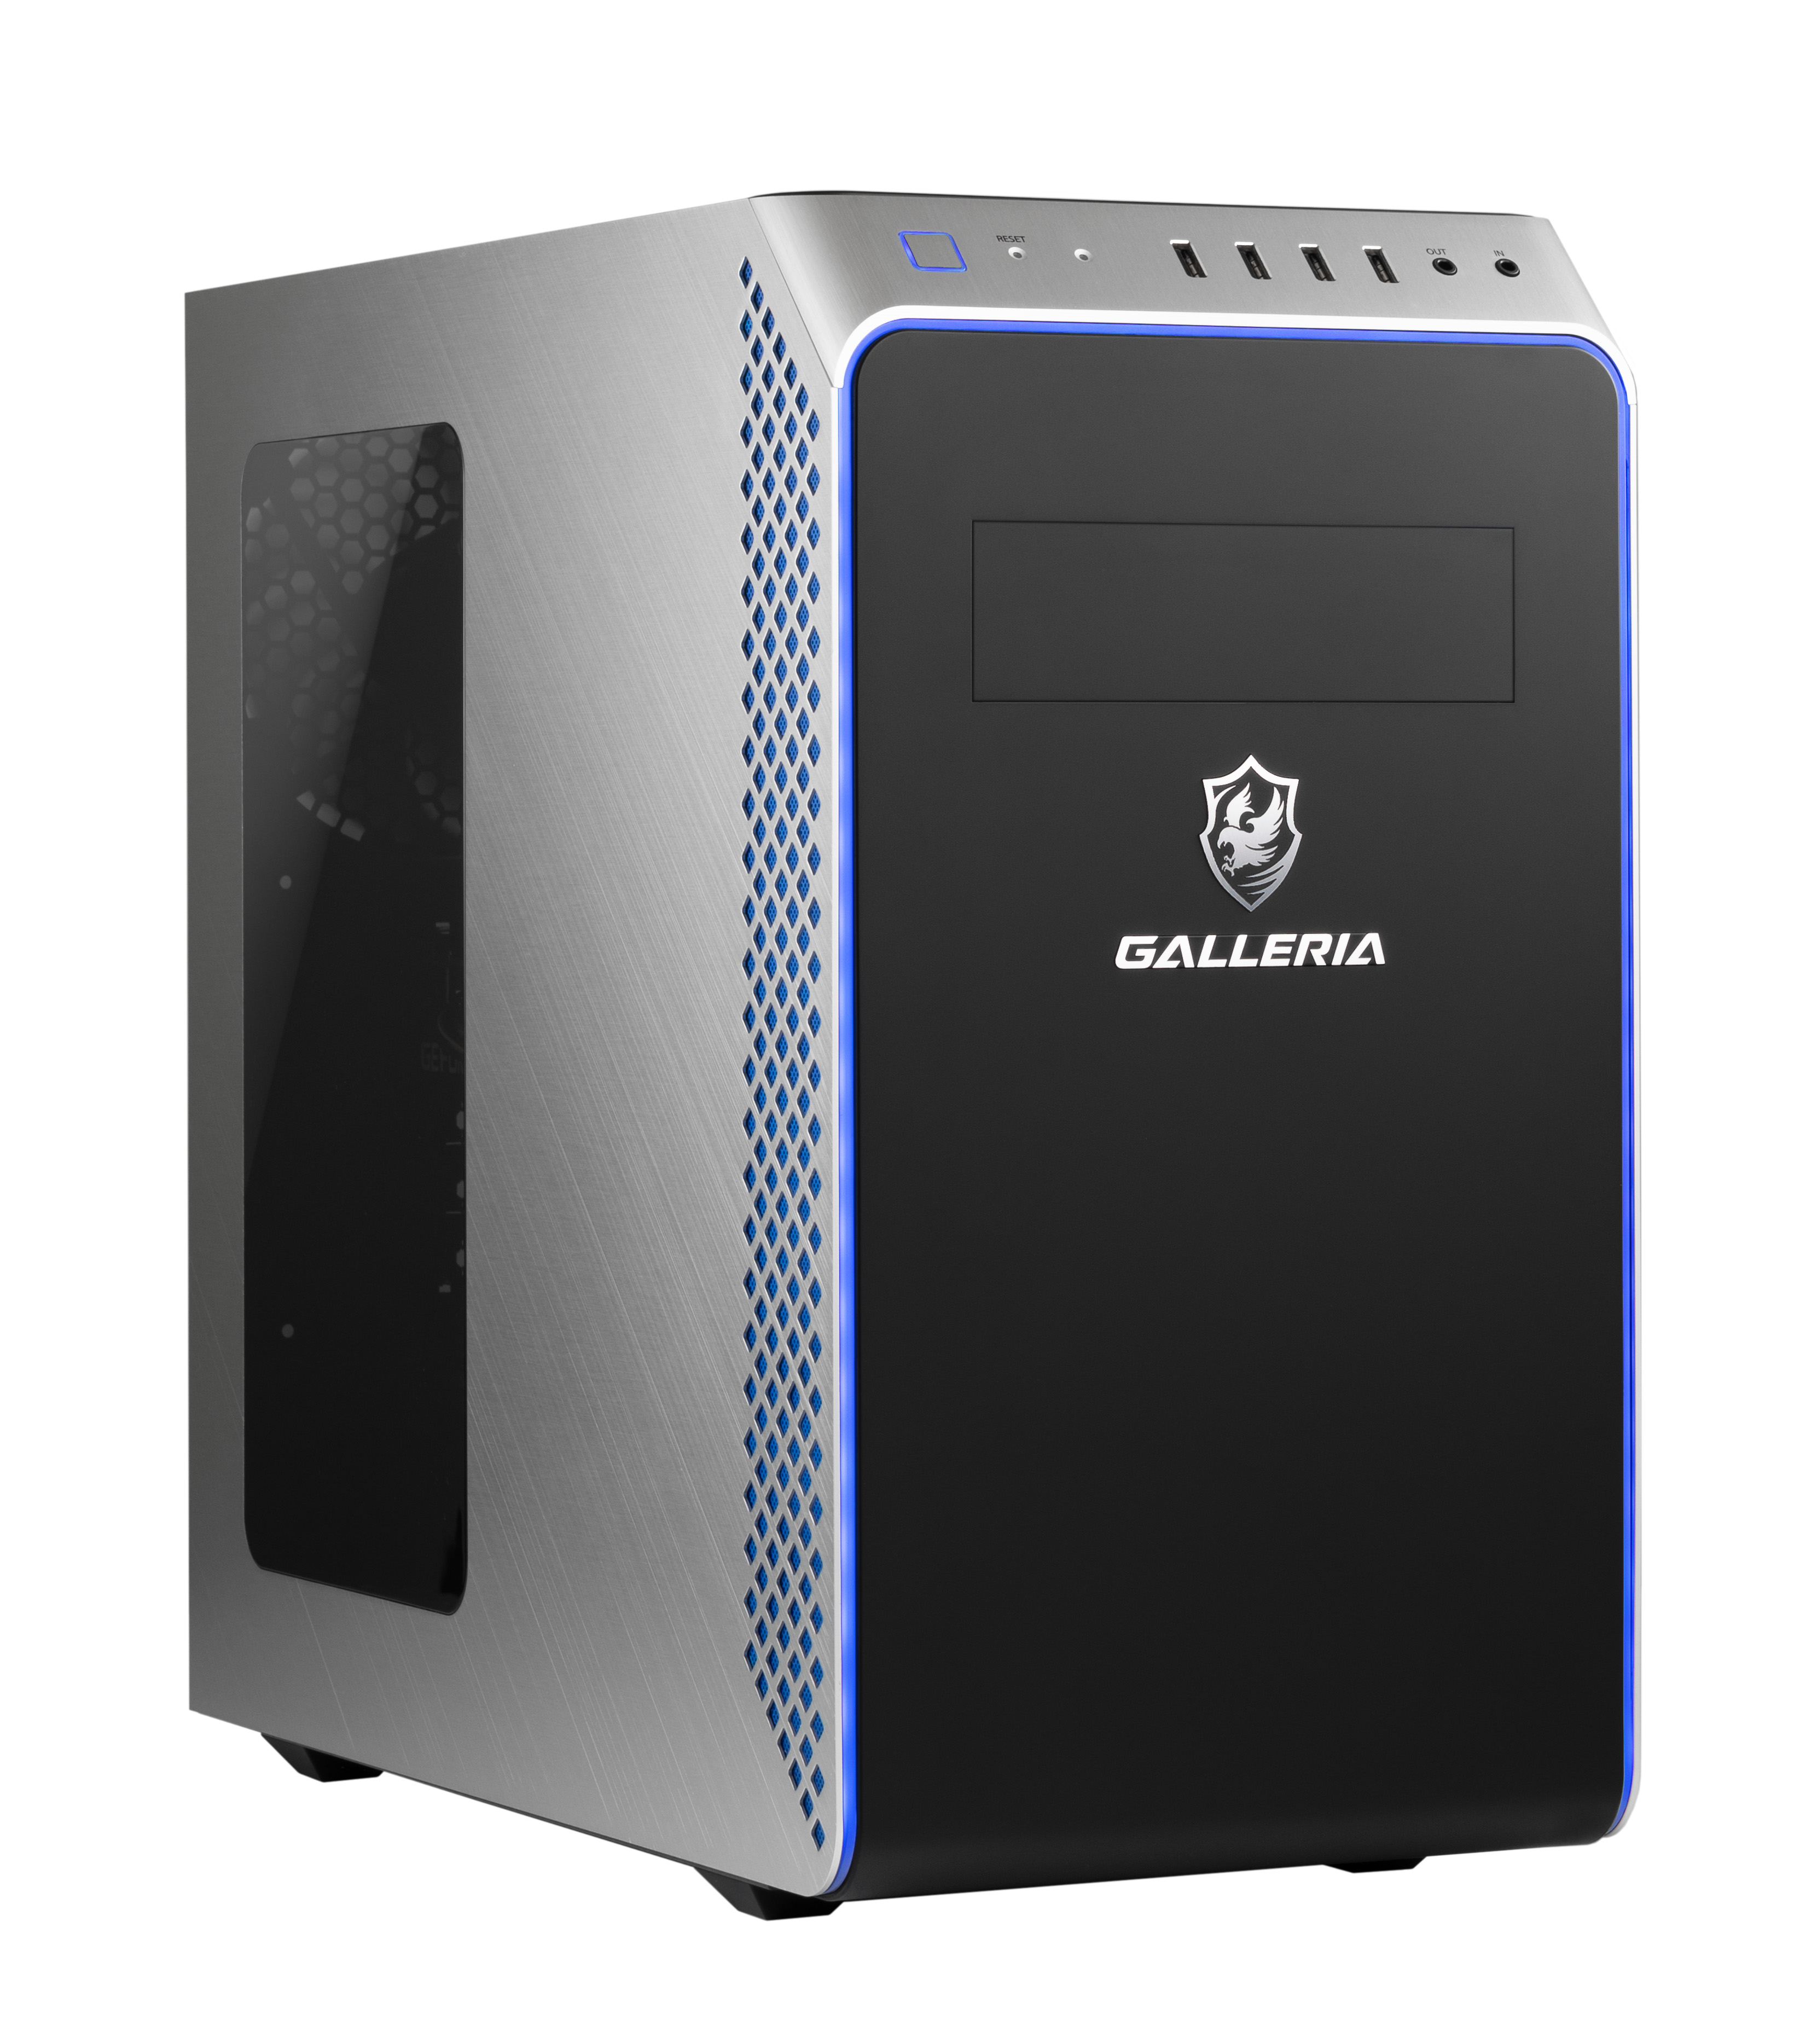 【あと2日】GALLERIA GTX1650ti Core i5 10200H